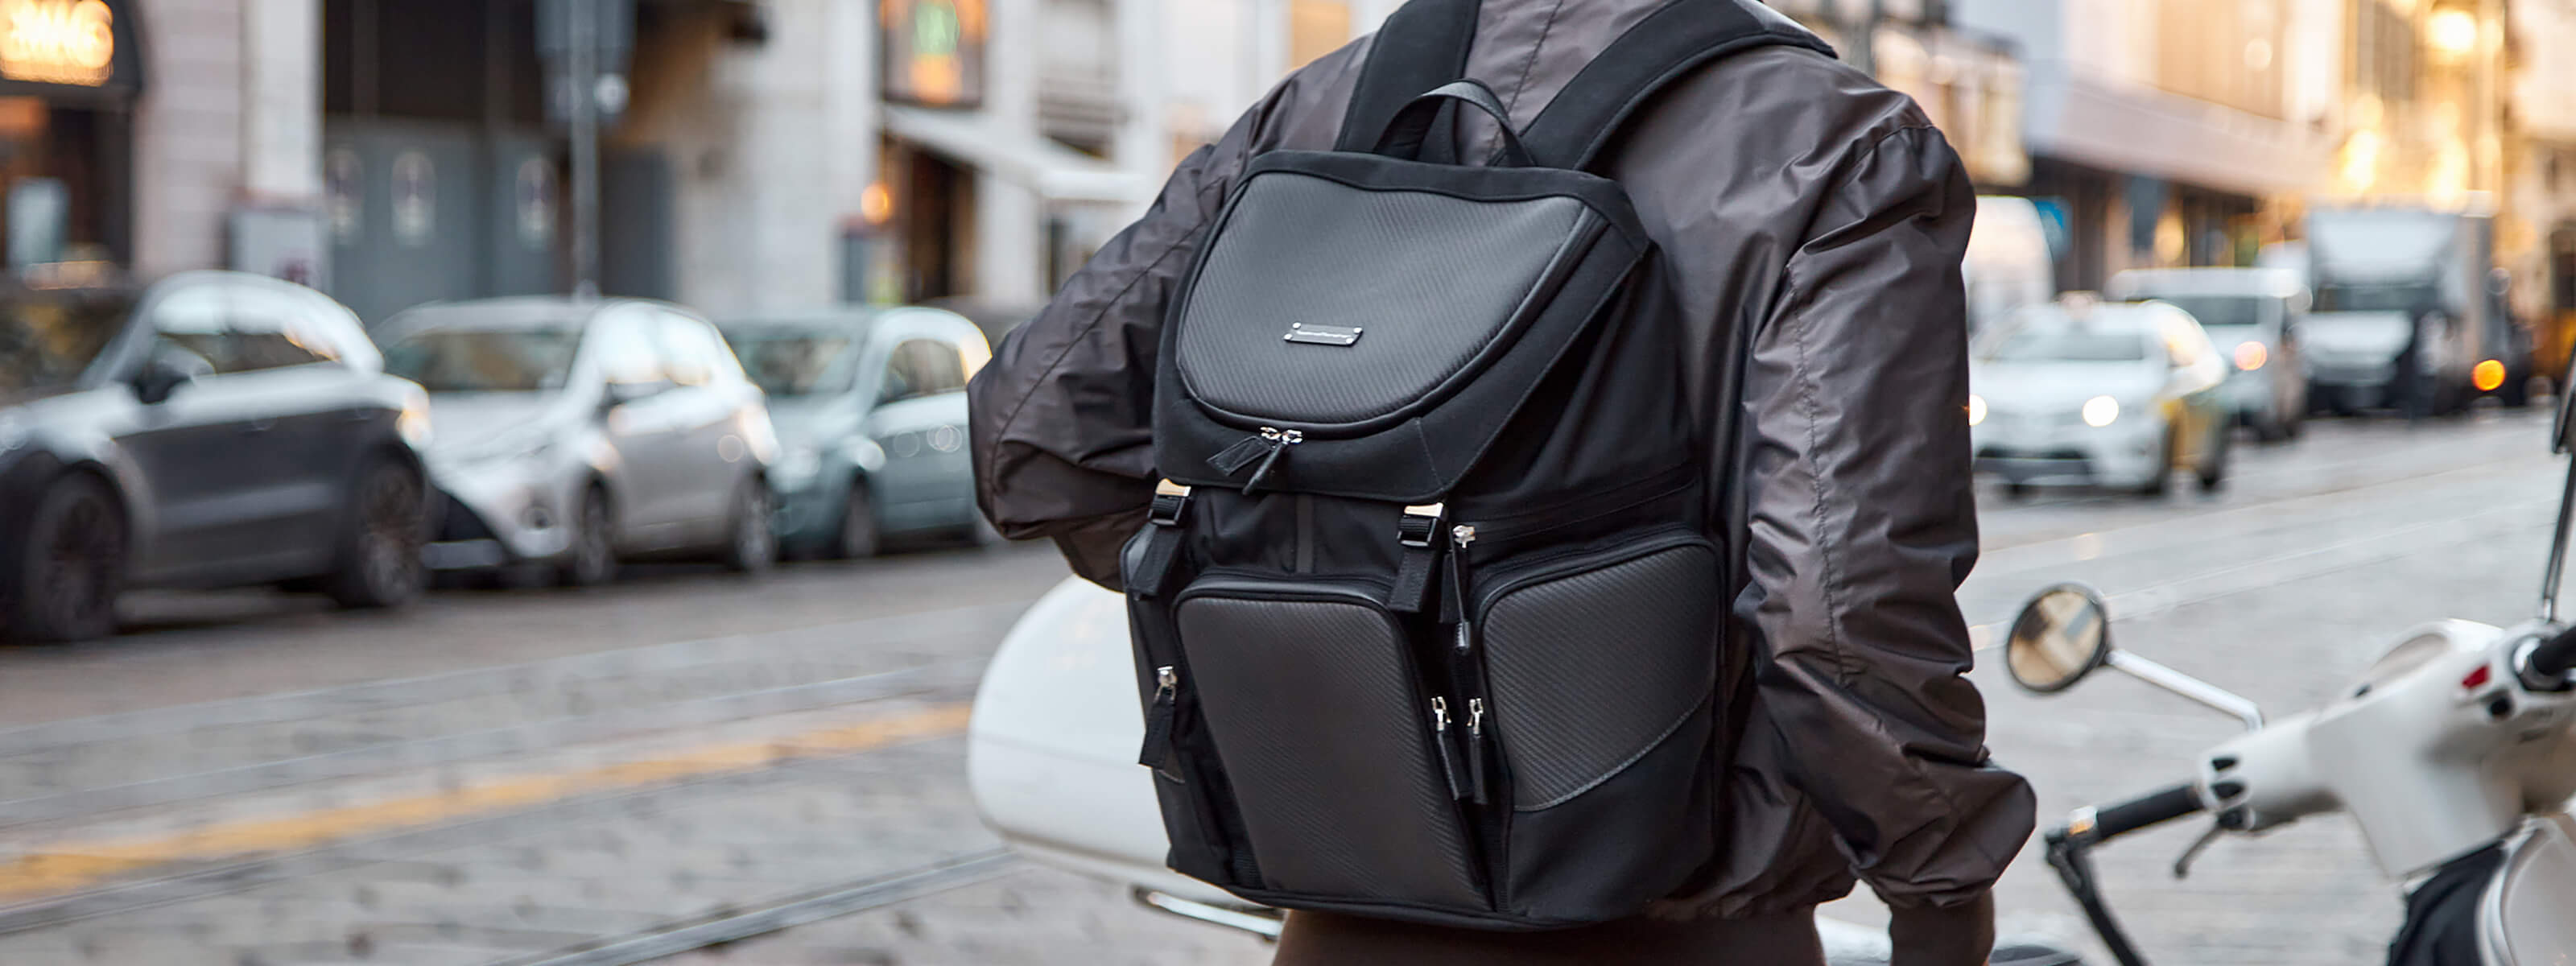 leather carbon fiber backpack tecknomonster